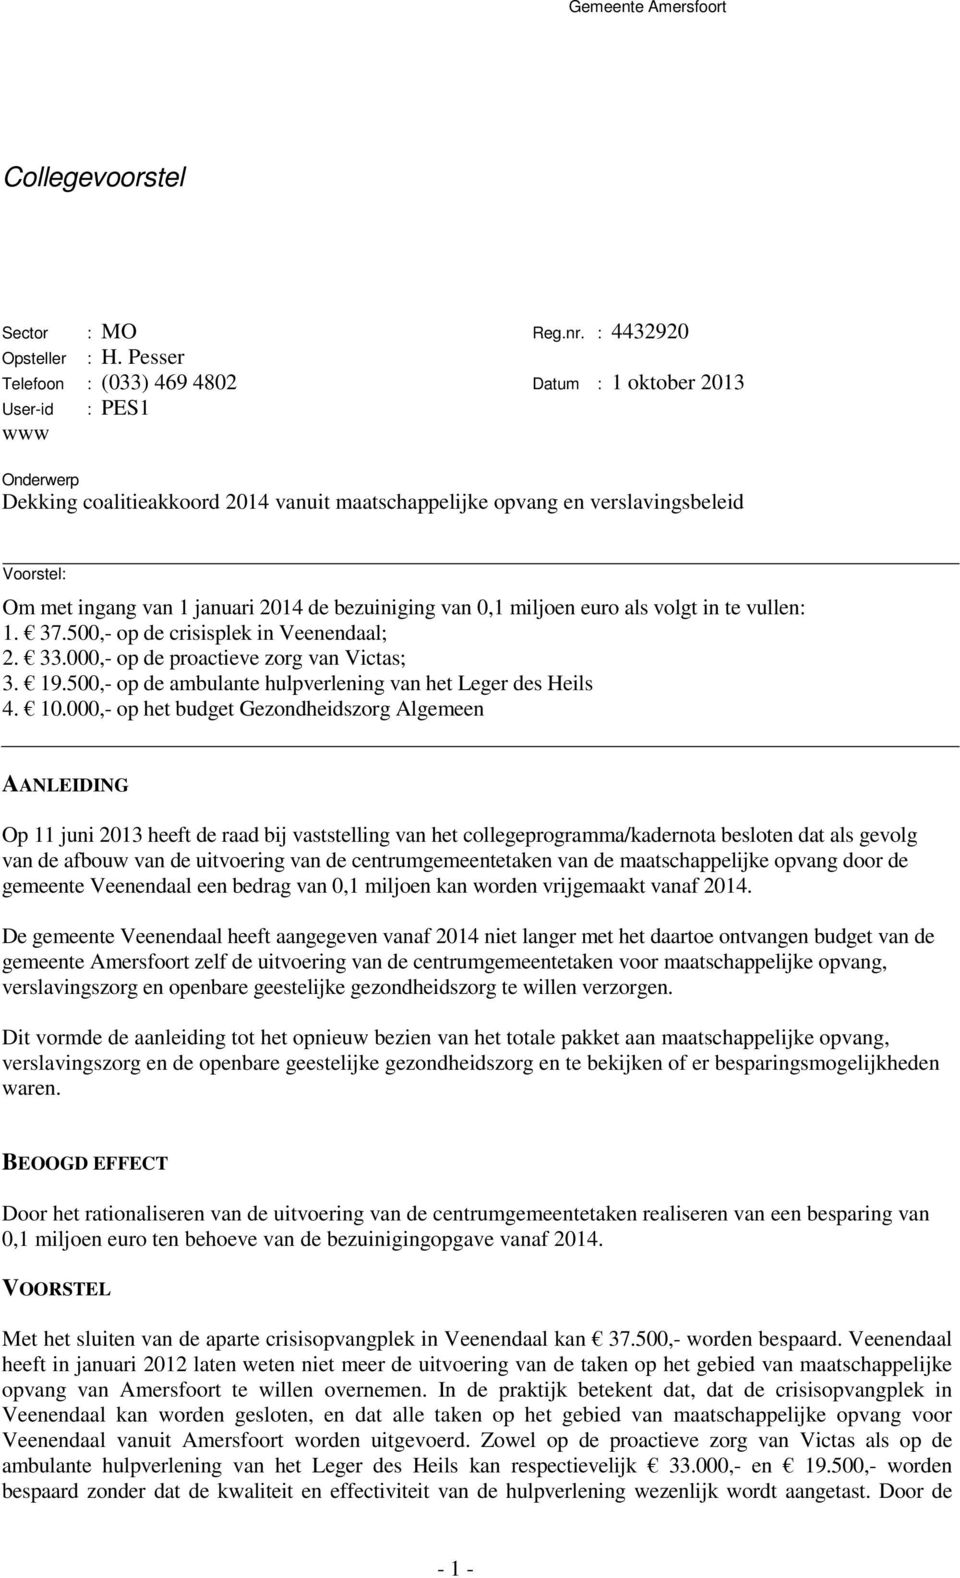 januari 2014 de bezuiniging van 0,1 miljoen euro als volgt in te vullen: 1. 37.500,- op de crisisplek in Veenendaal; 2. 33.000,- op de proactieve zorg van Victas; 3. 19.